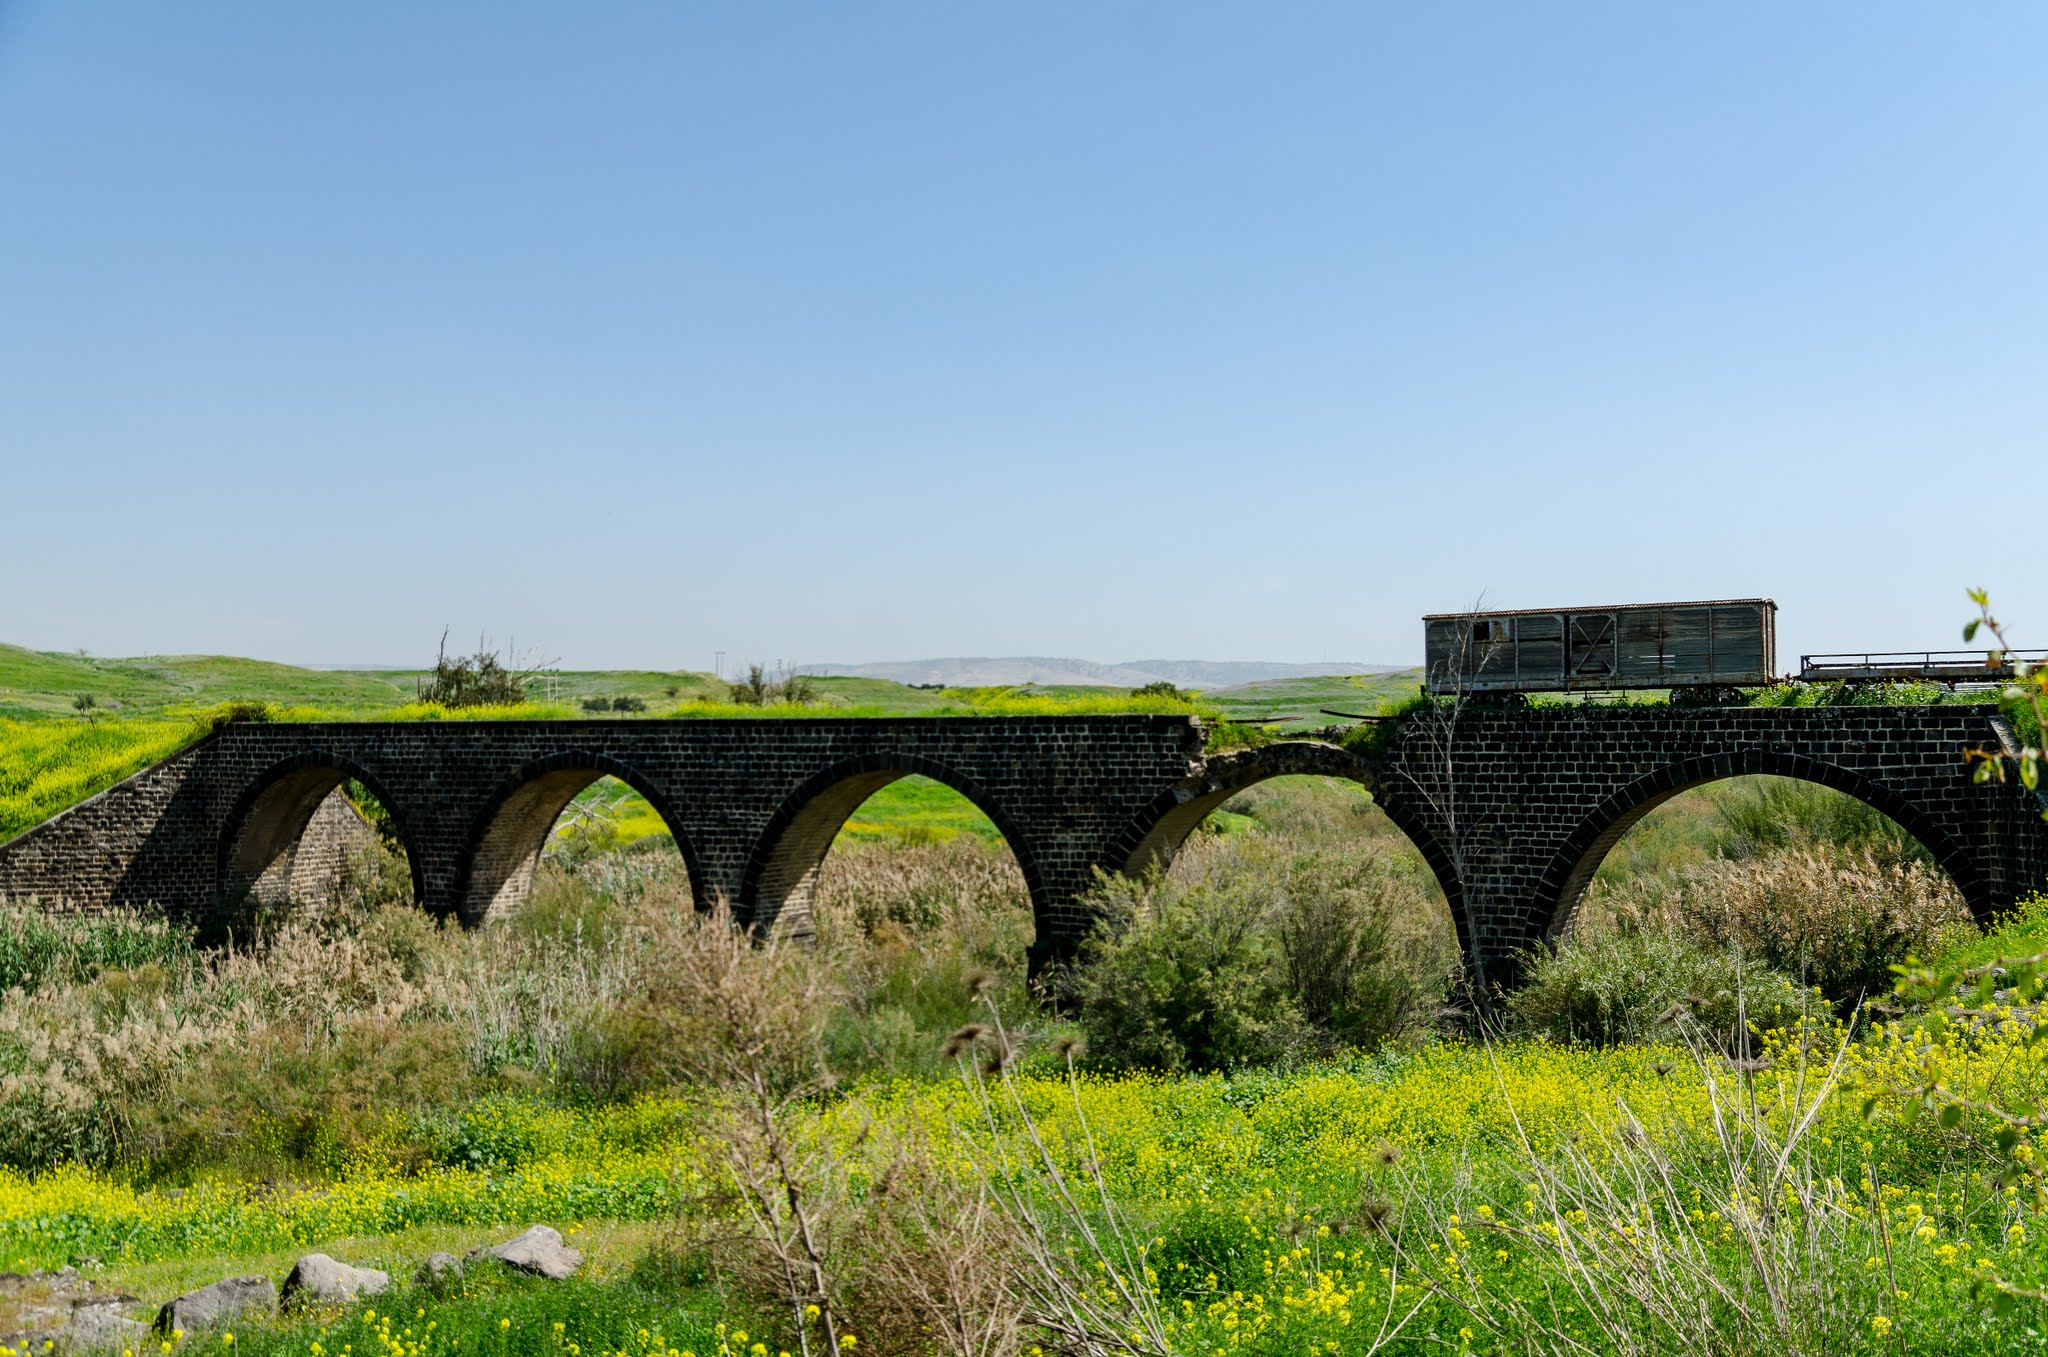 גשר הרכבת העות'מאני